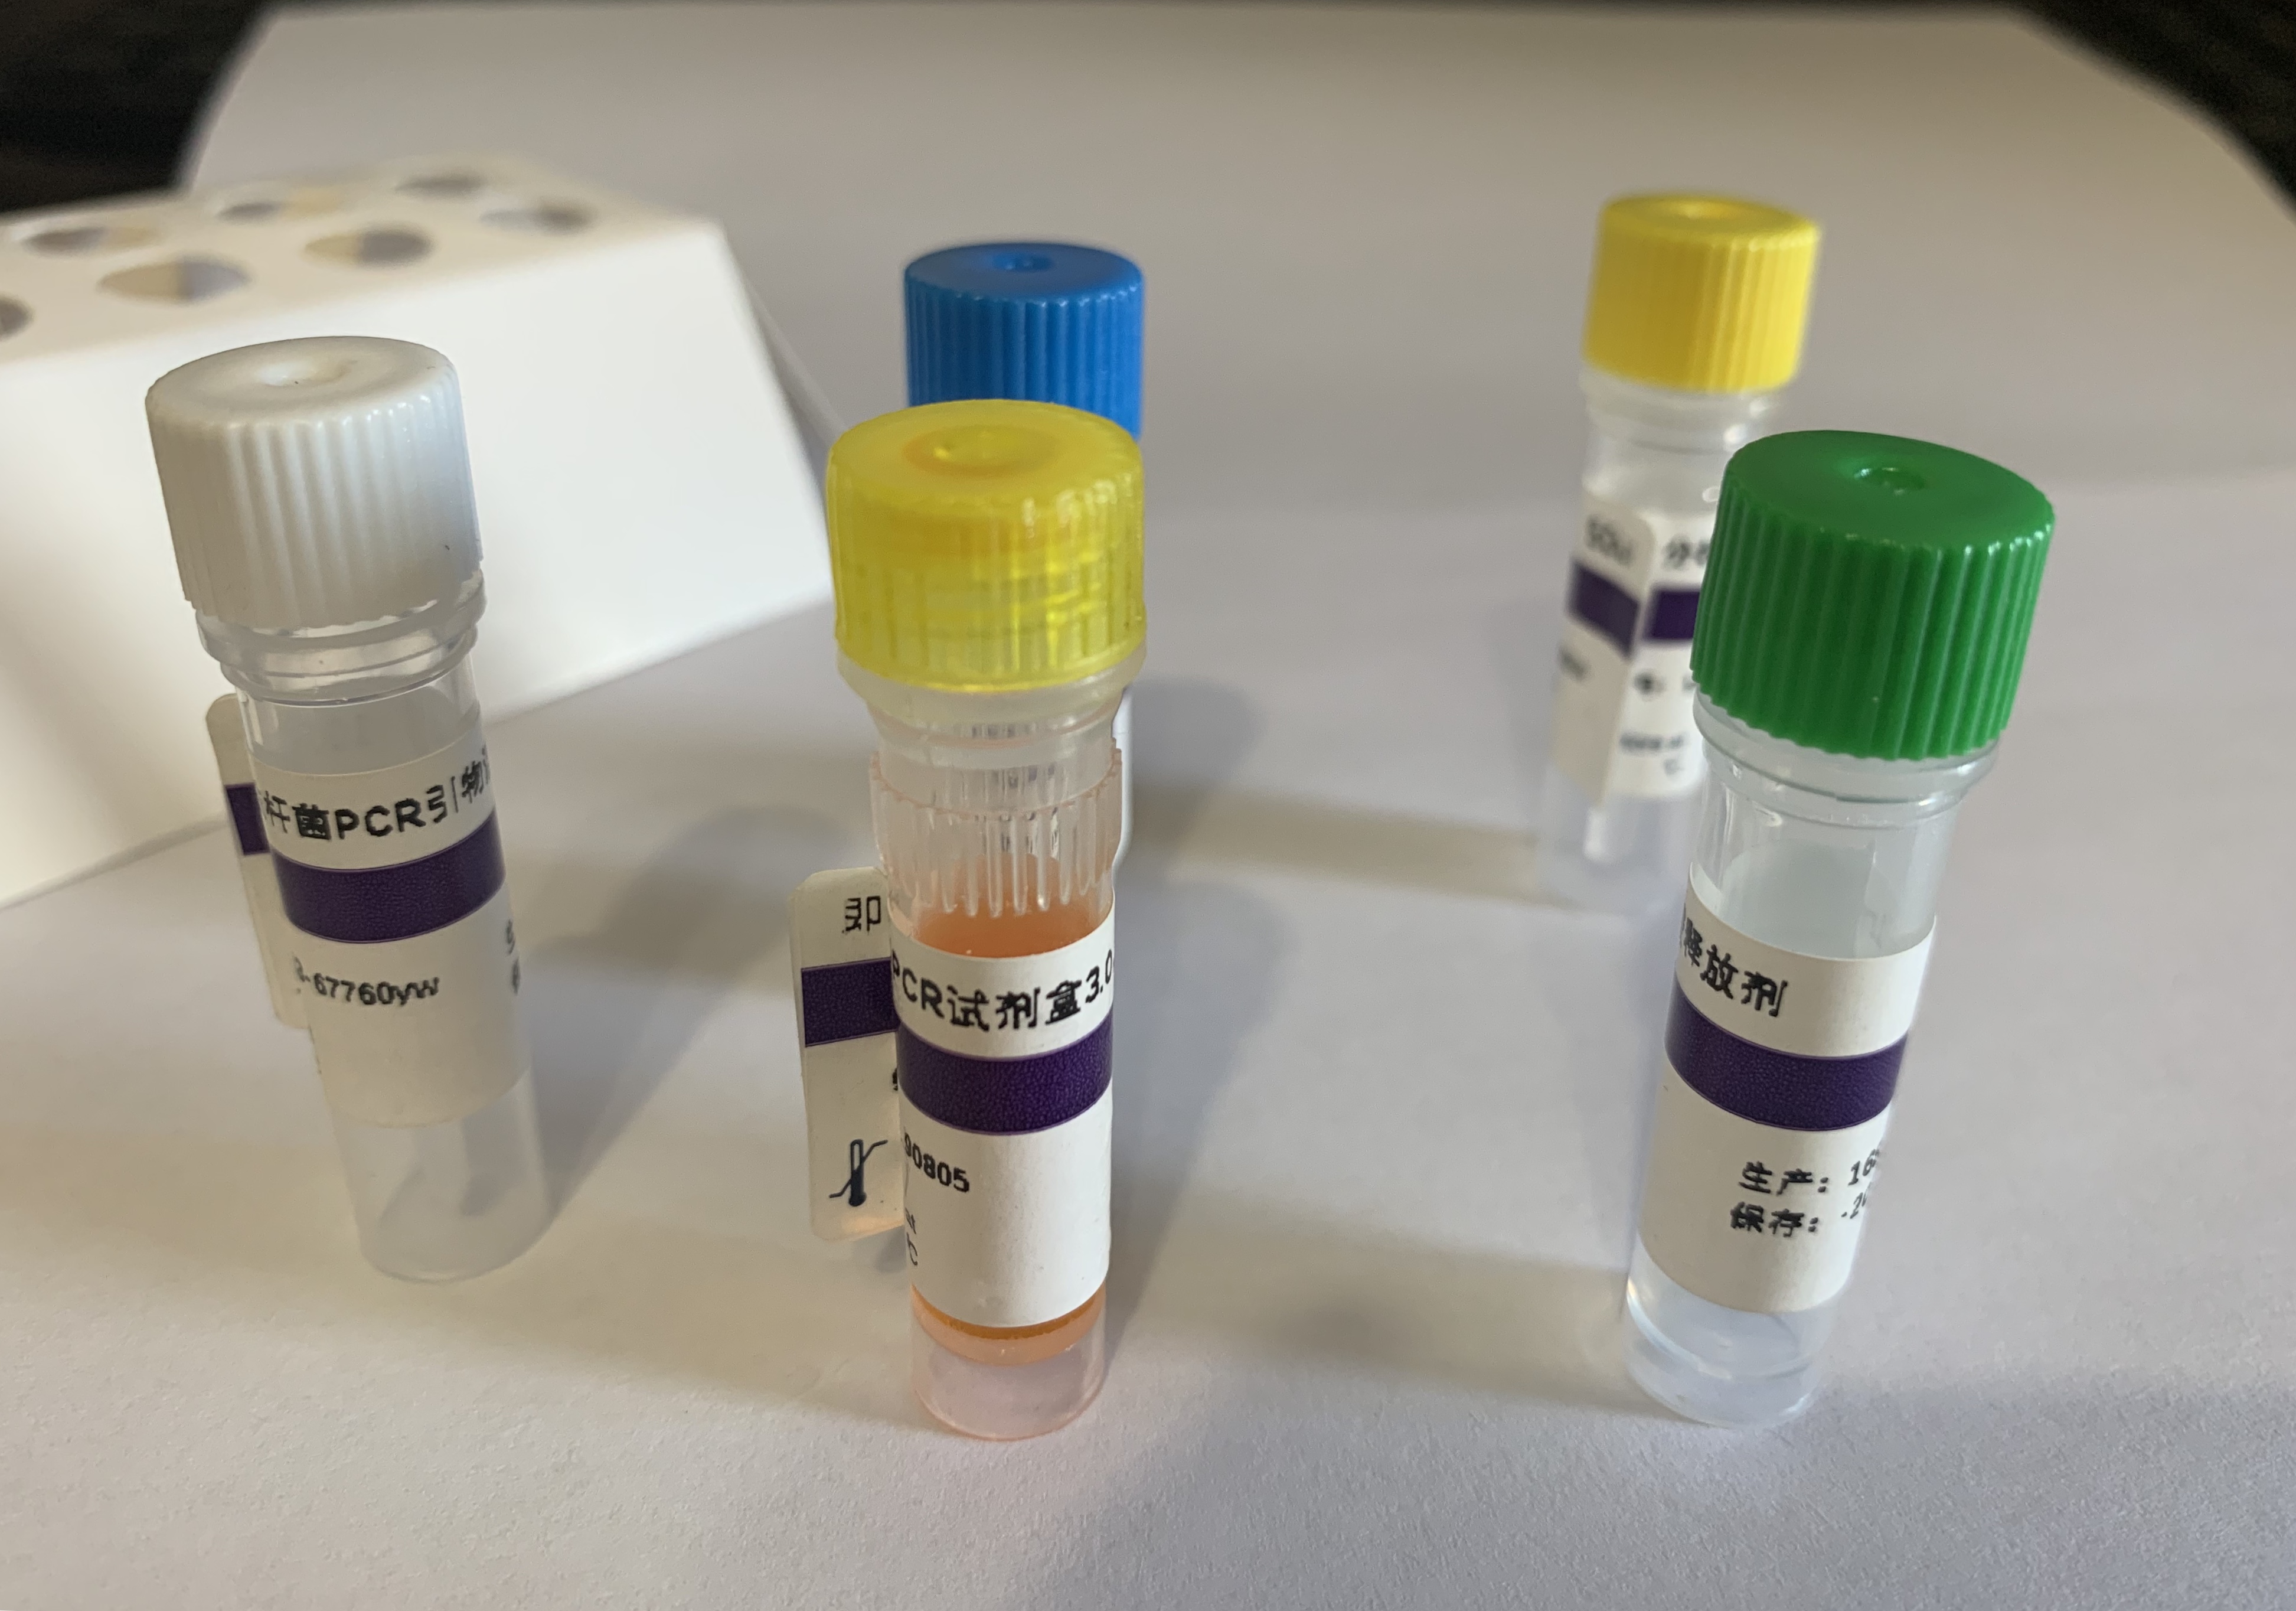 猪传染性胃肠炎/猪流行性腹泻病毒/猪A组轮状病毒(TGEV/PEDV/PRV-A)核酸检测试剂盒(荧光-PCR法)